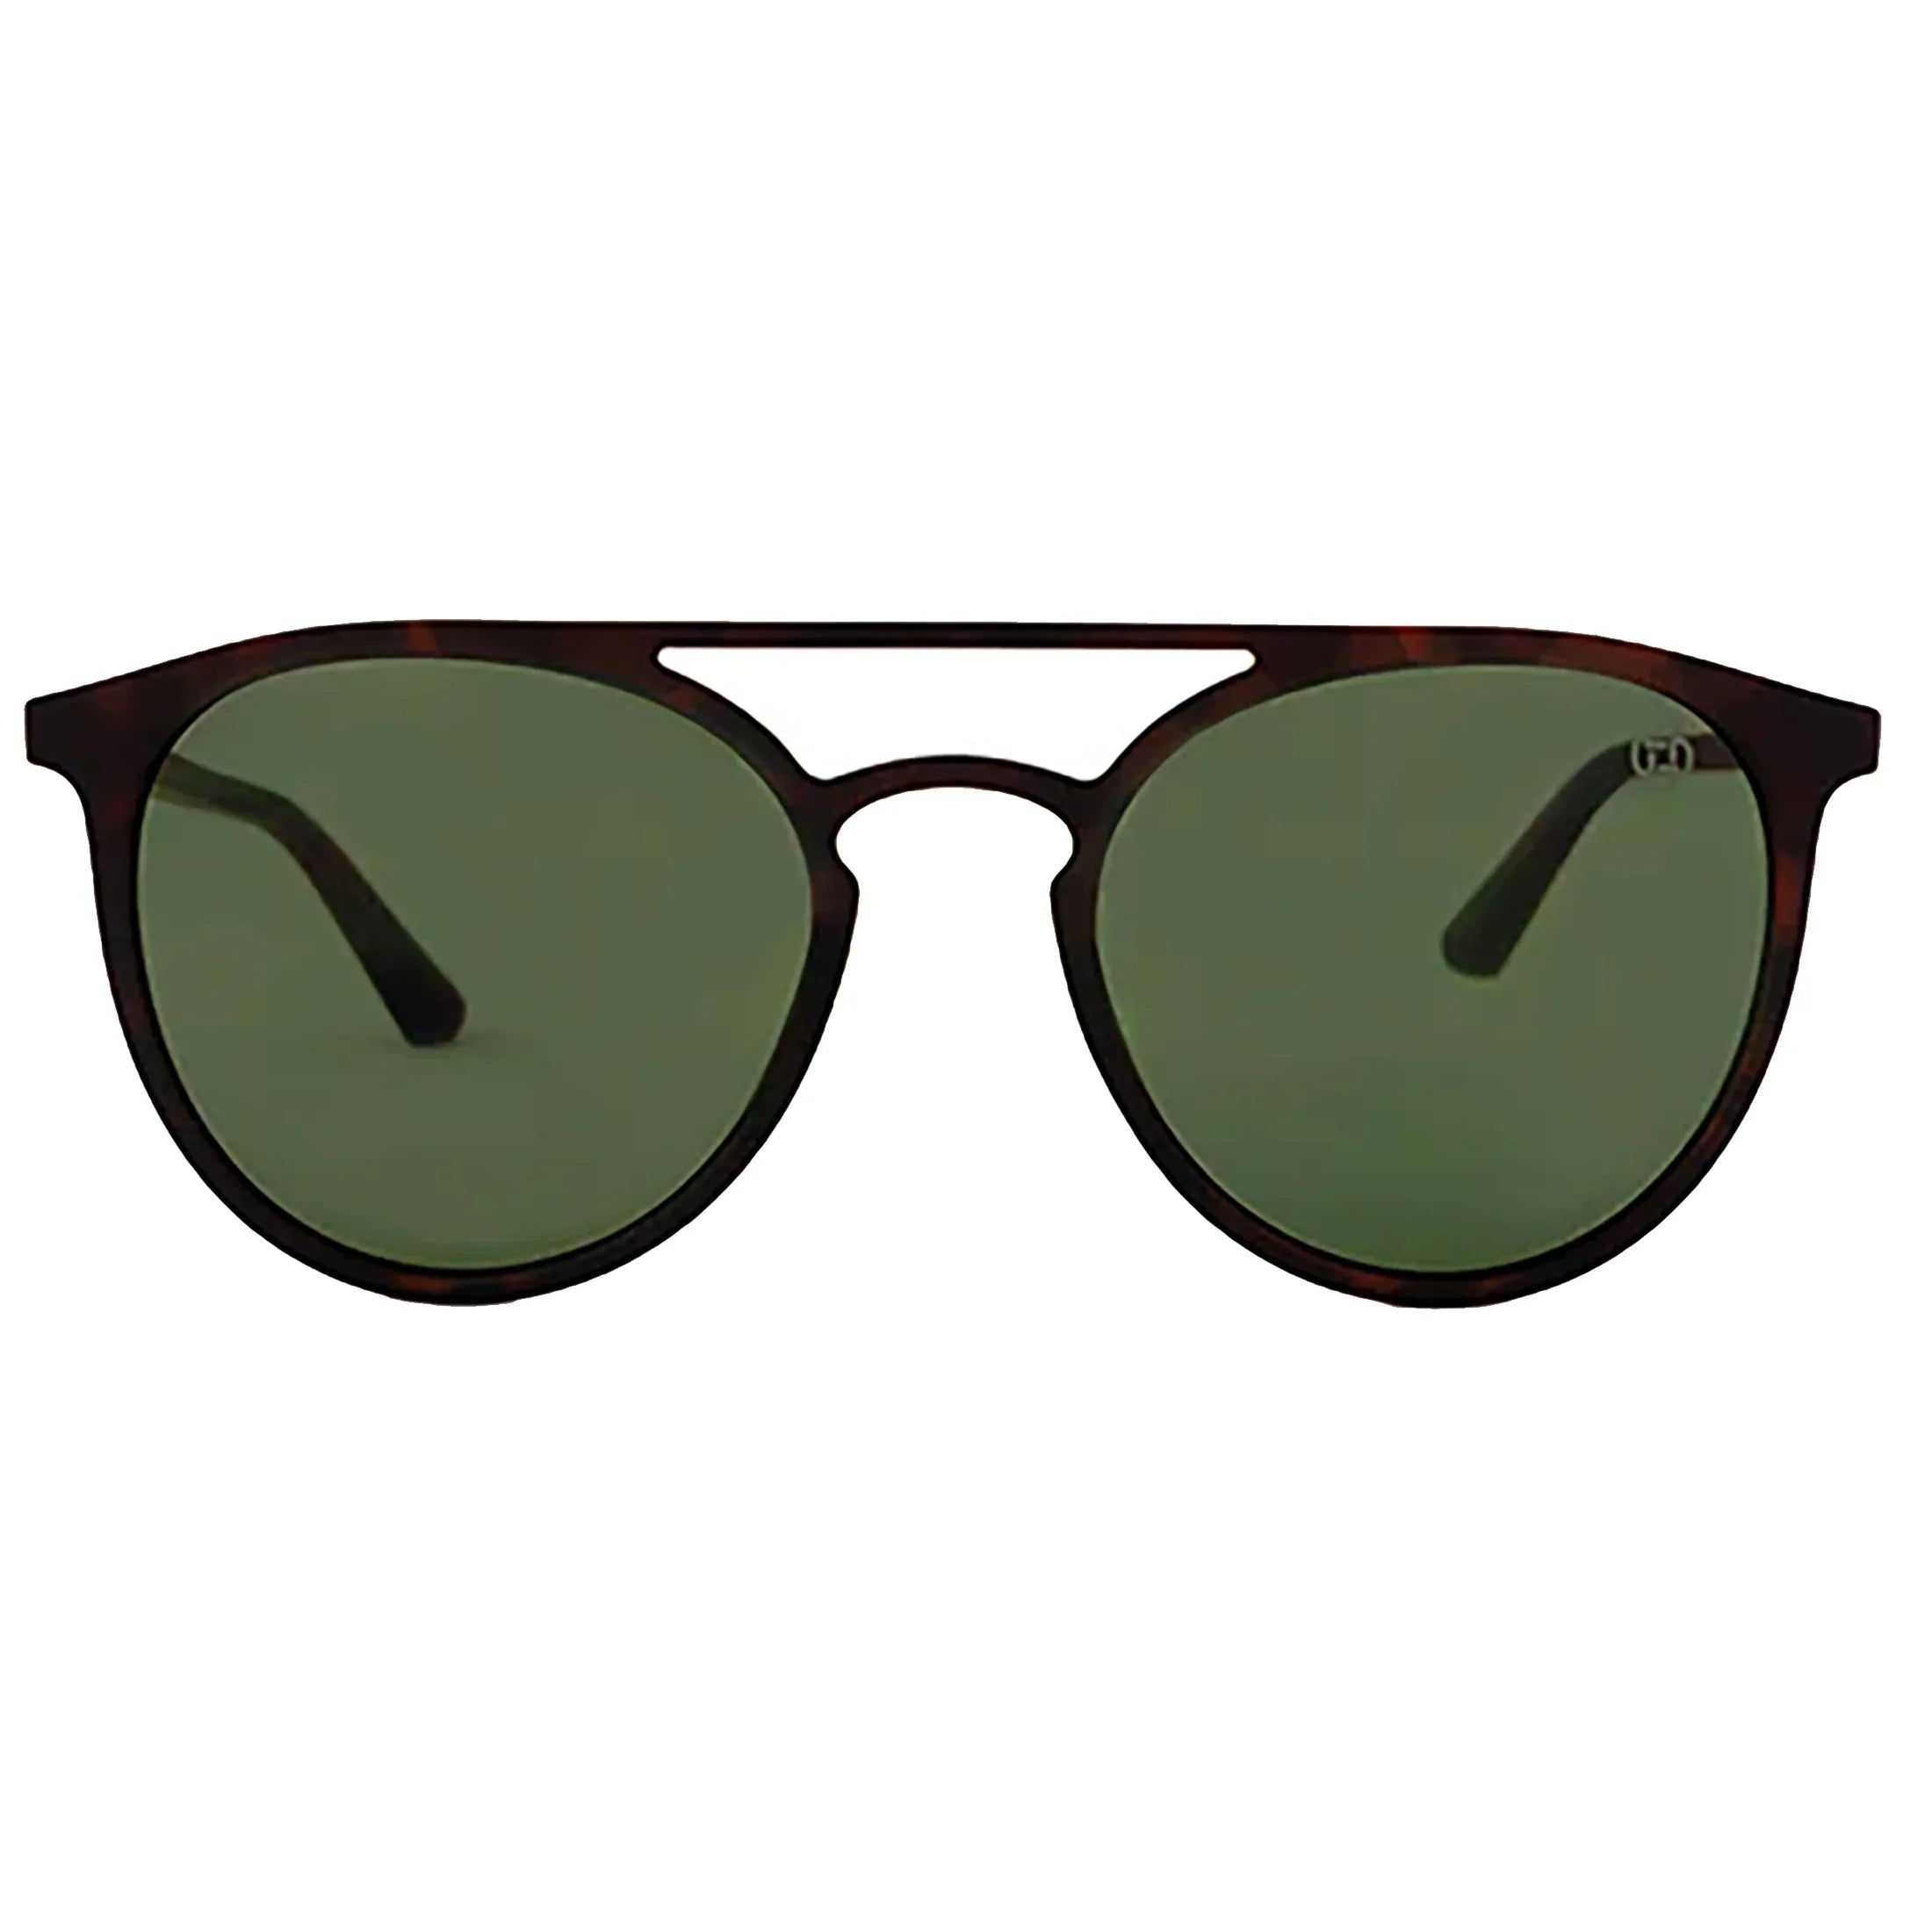 J. Athletics Monti sunglasses 52-20 - Havana/Olive